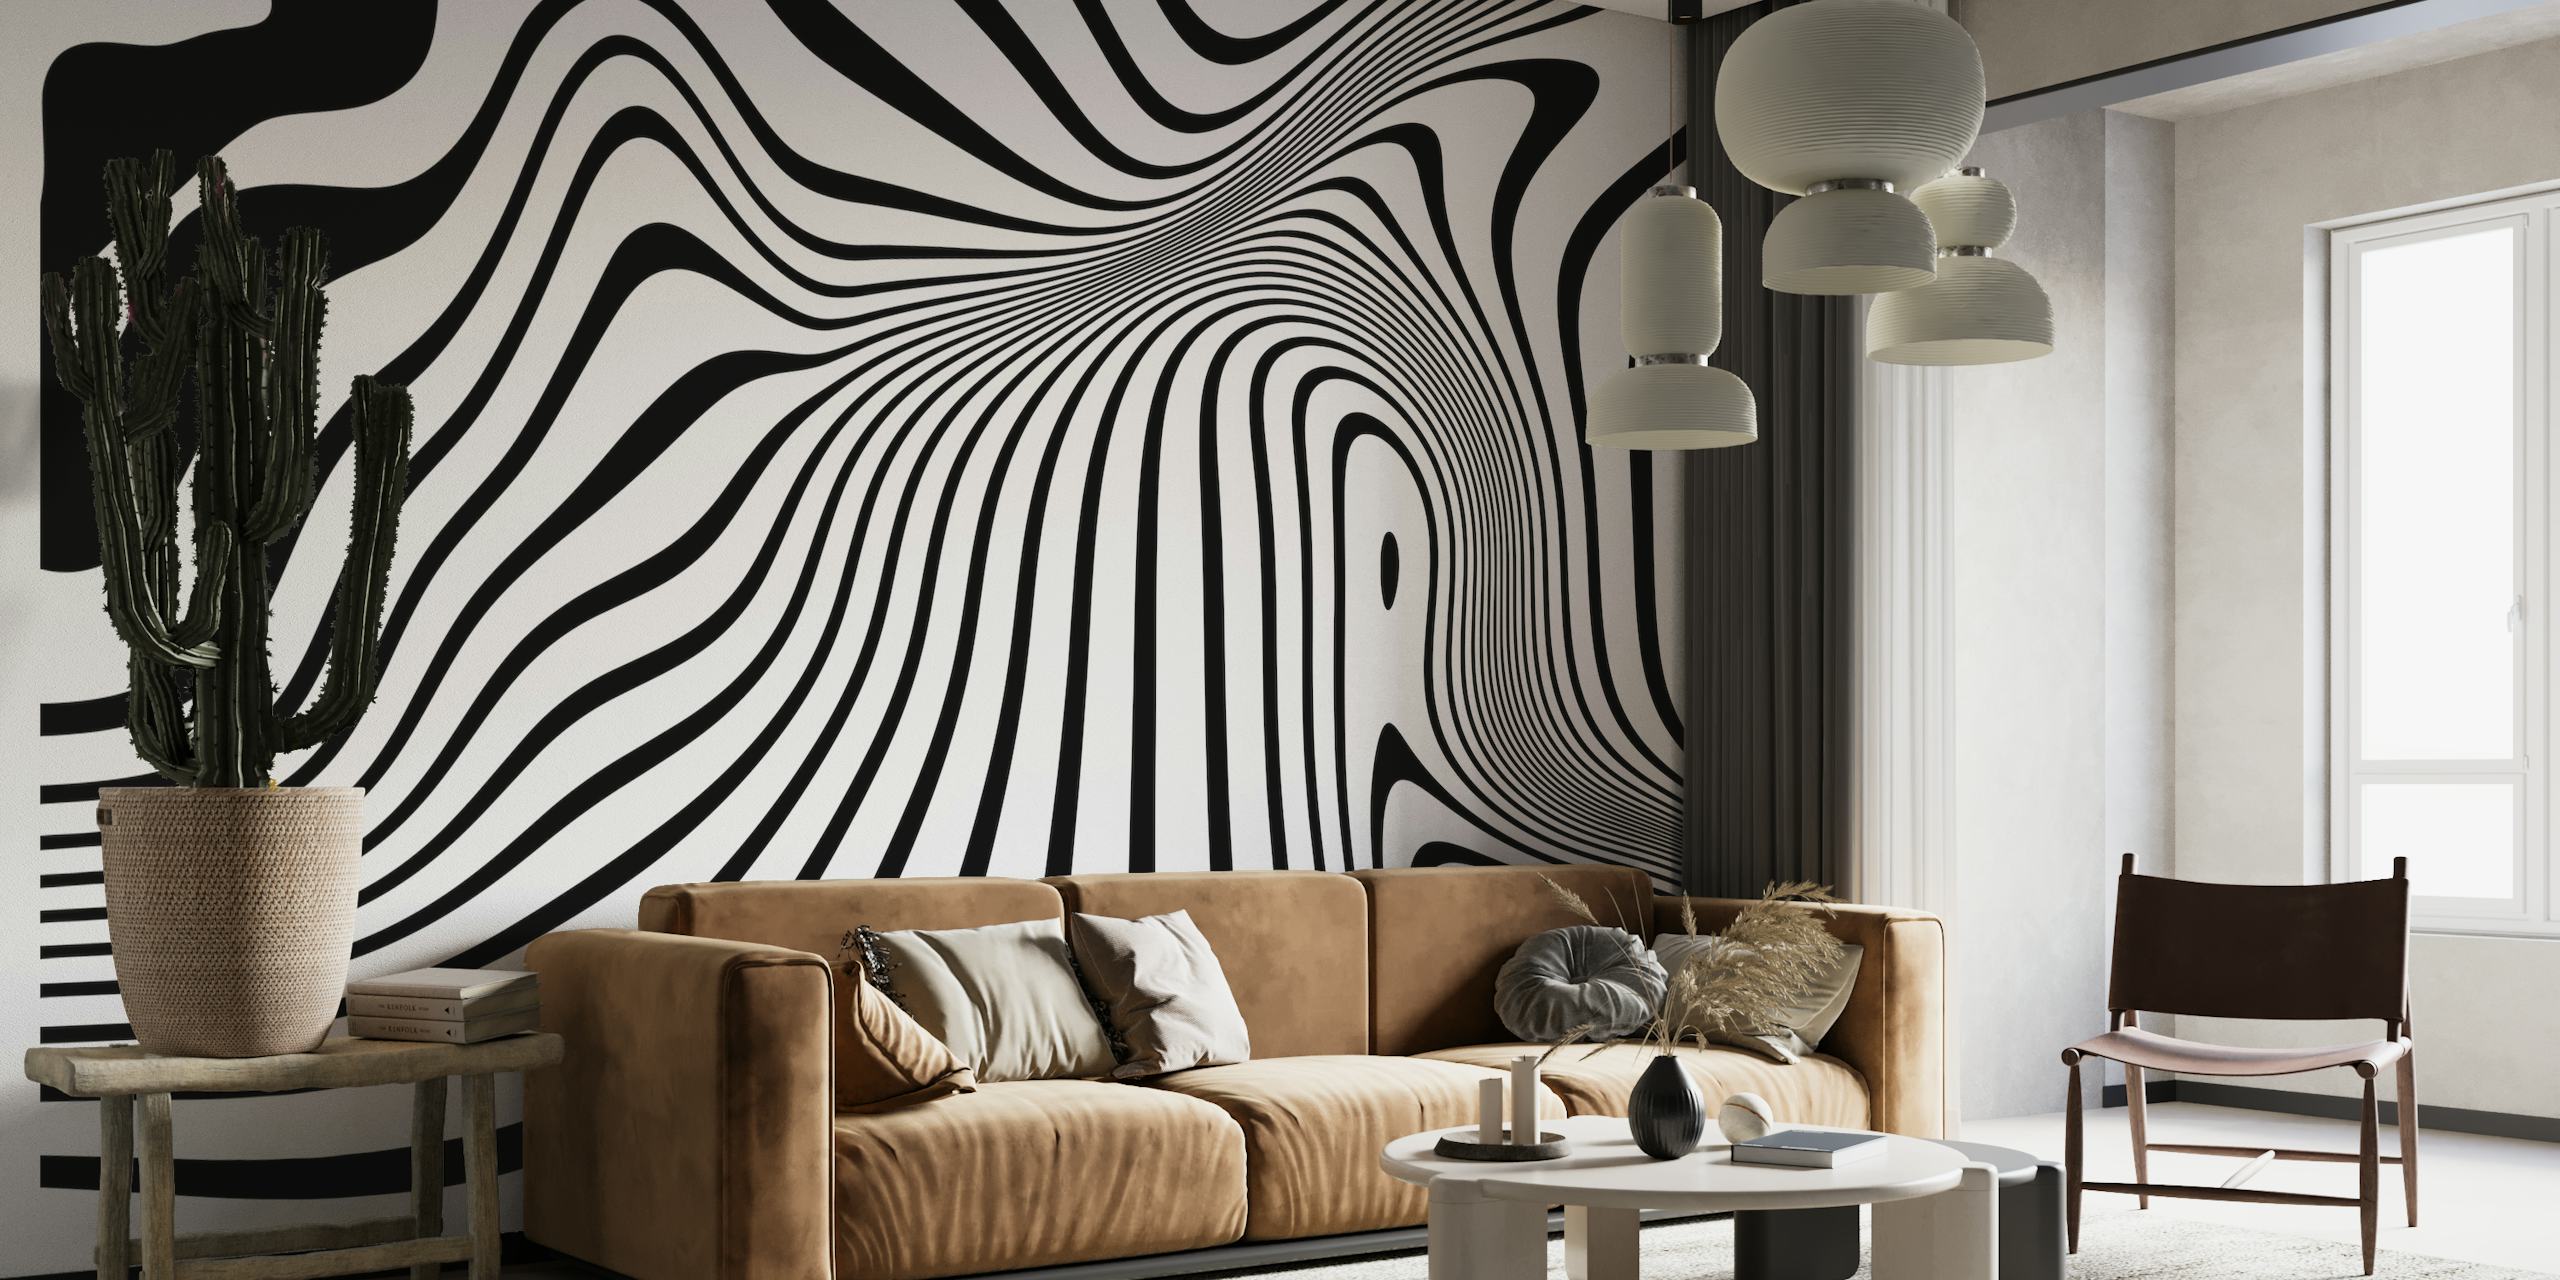 Peinture murale abstraite en noir et blanc avec des formes fluides et organiques créant une texture visuelle dynamique